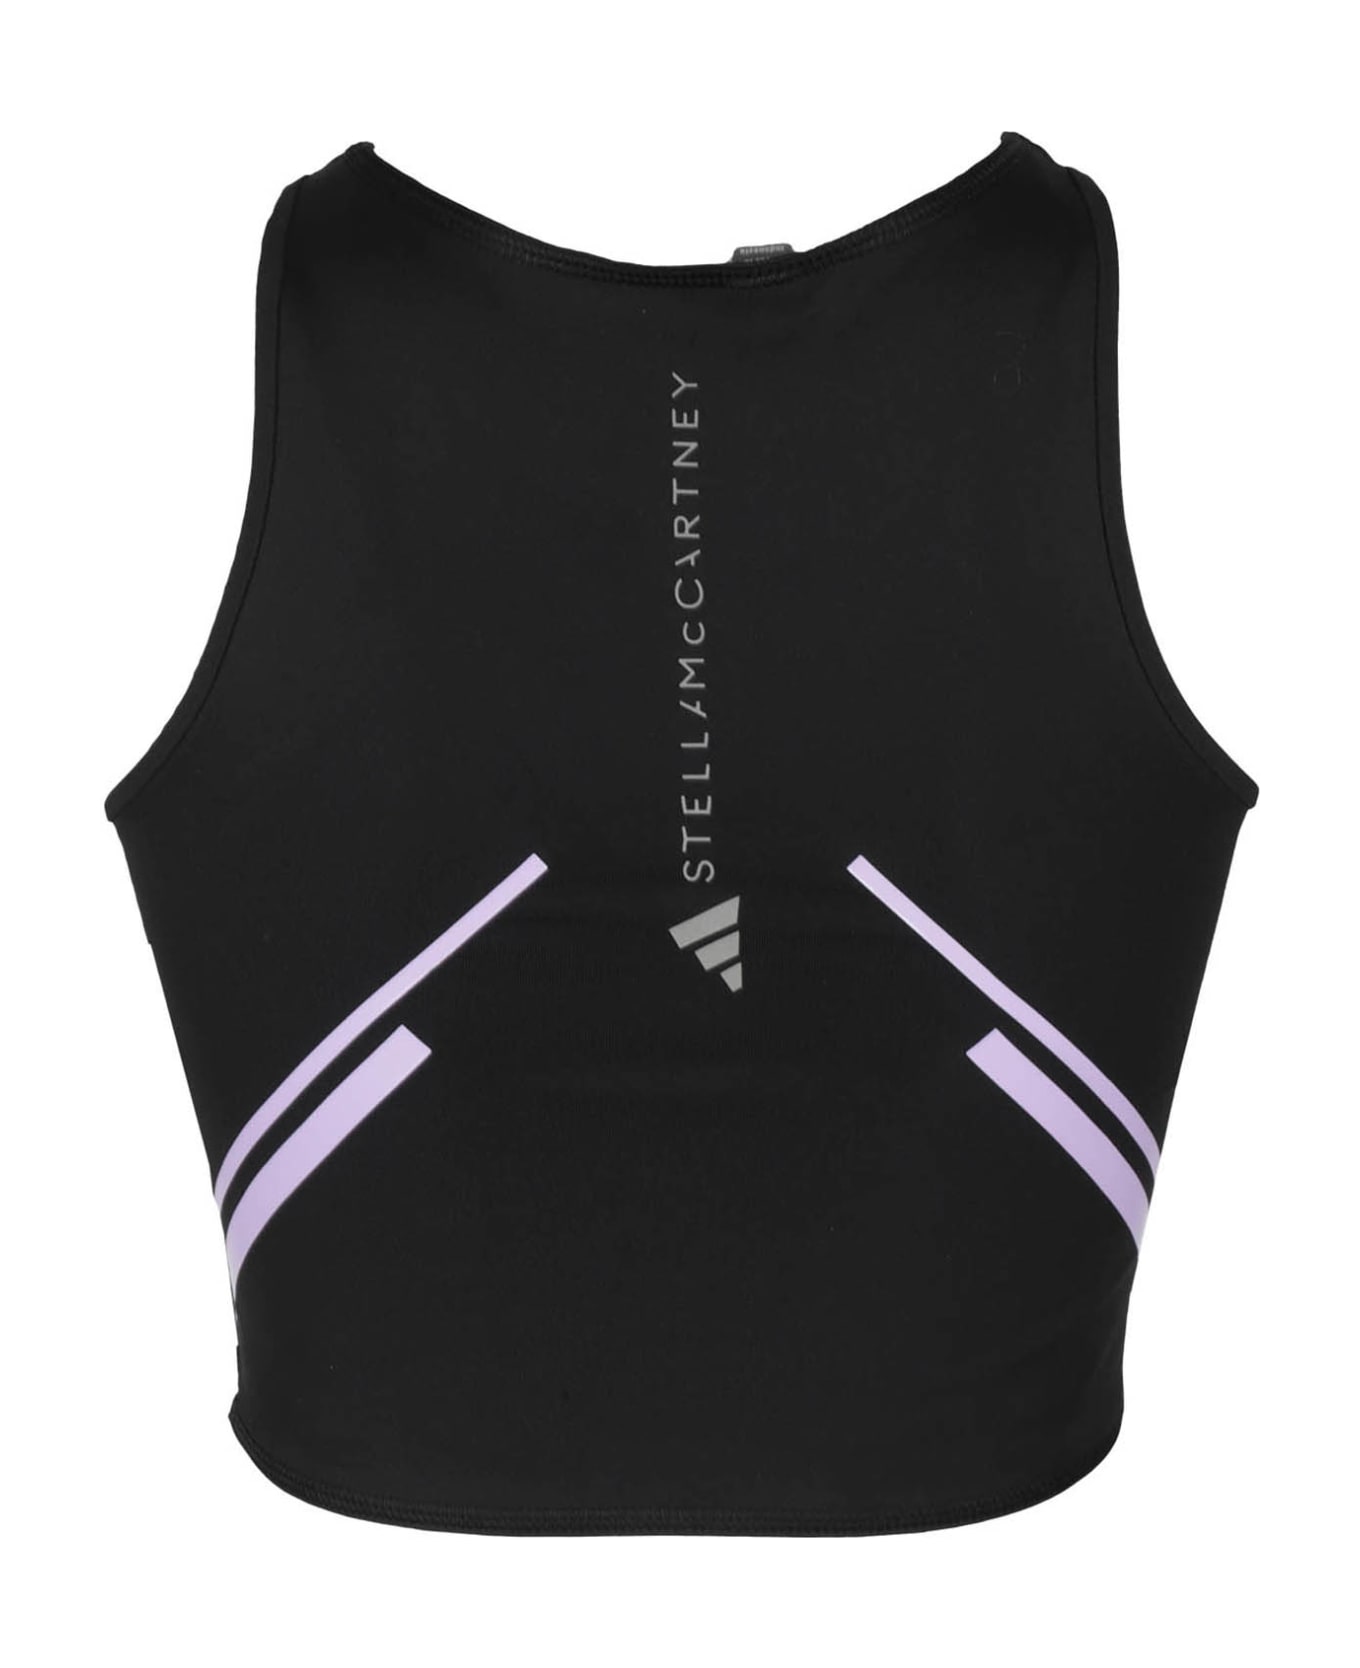 Adidas by Stella McCartney Tpa Cr Hr - Black Purple Glow